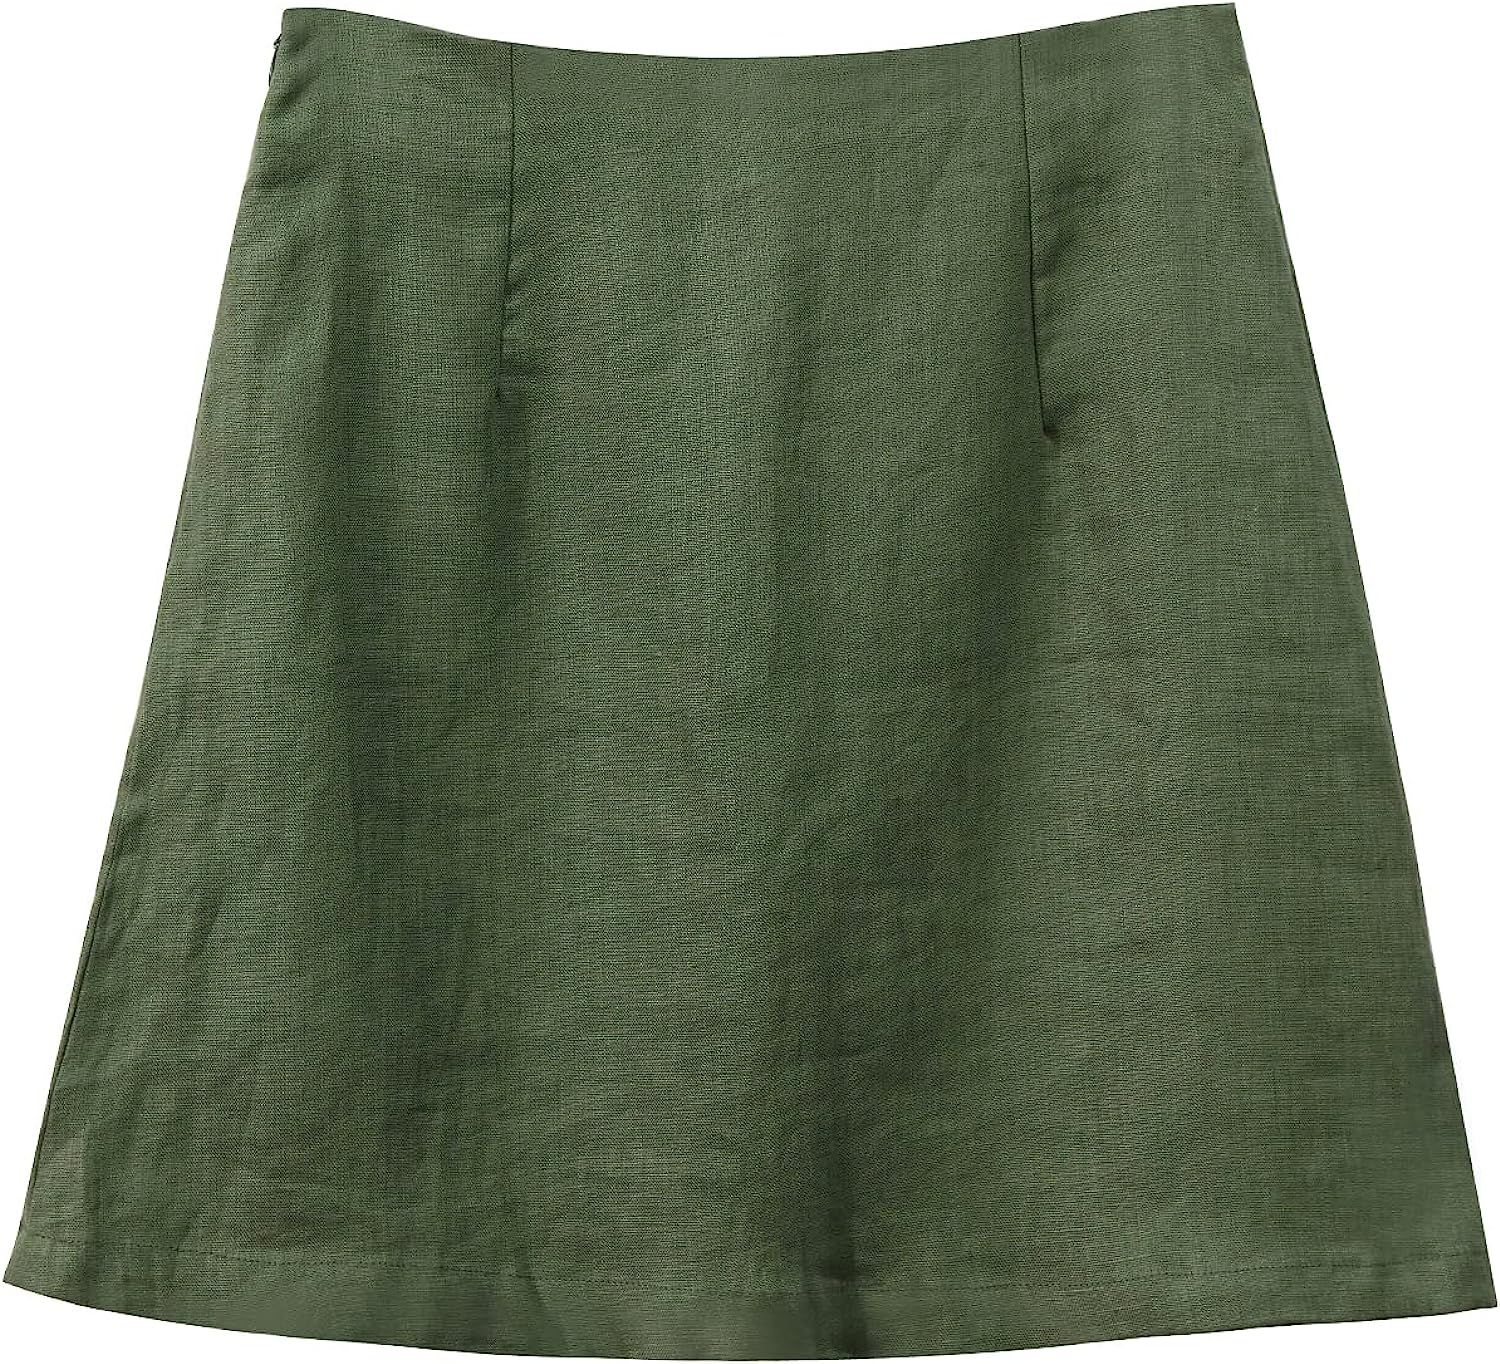 Amazhiyu Womens Pure Linen High Waist Mini Pencil Skirt Summer Zipper Short Skirt | Amazon (US)